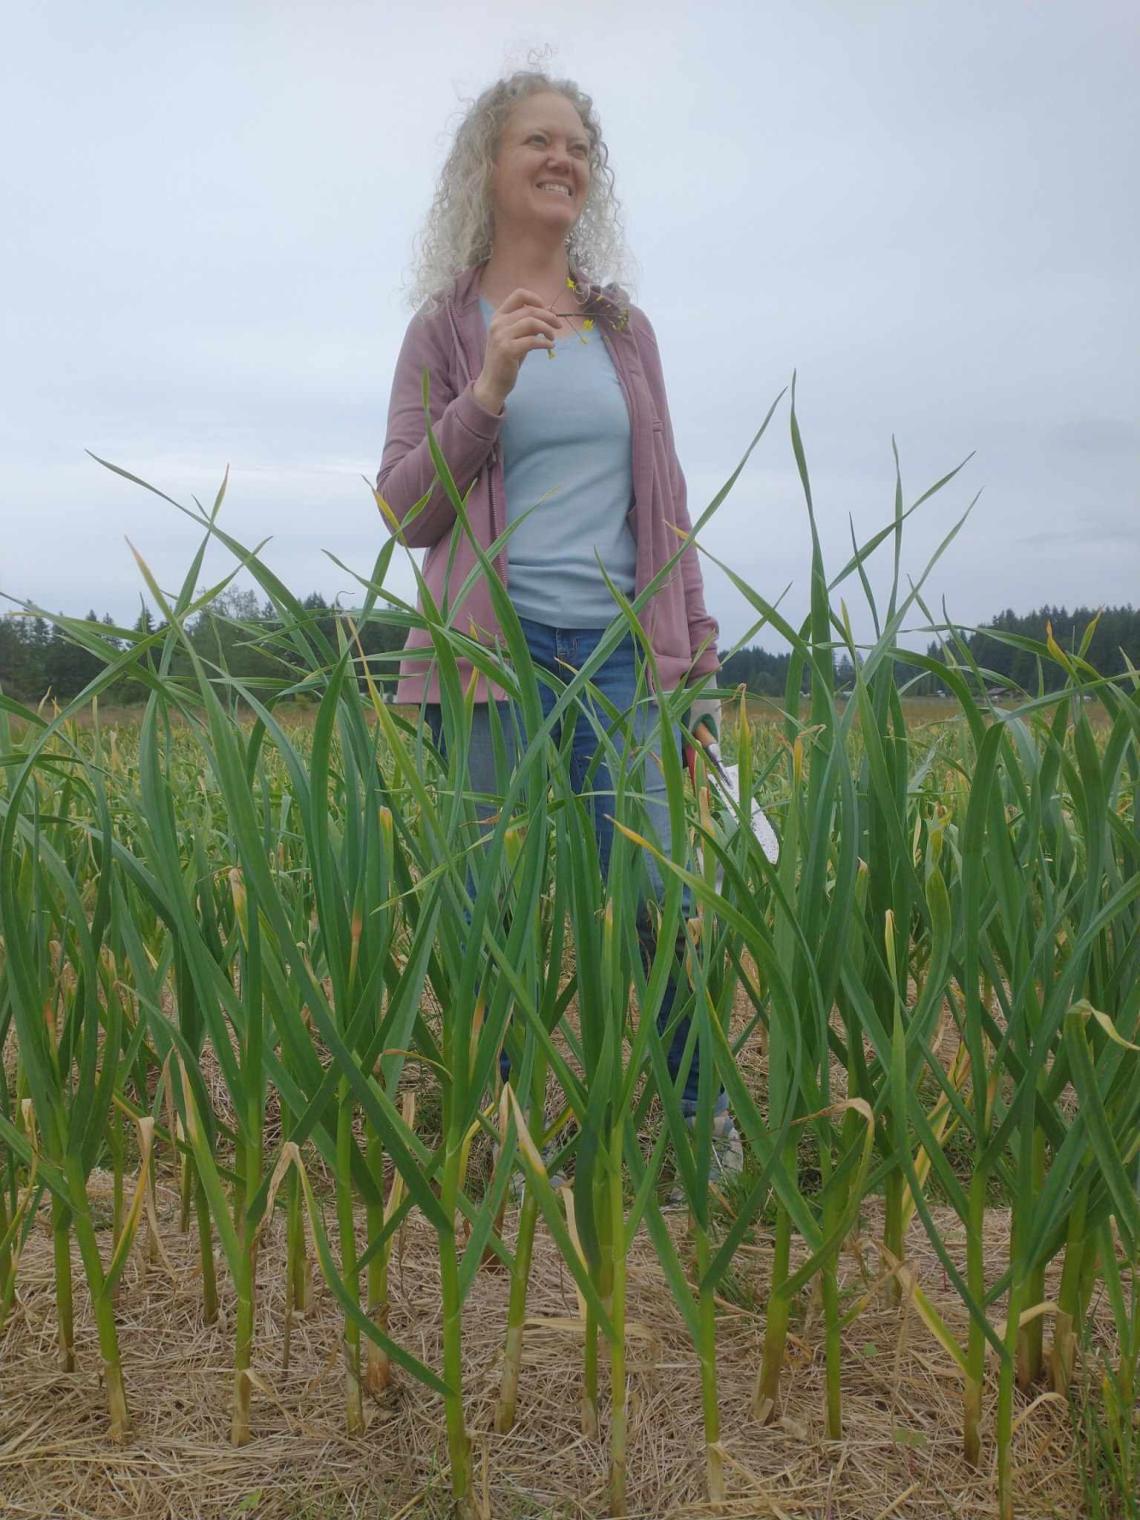 Toni in her garlic field